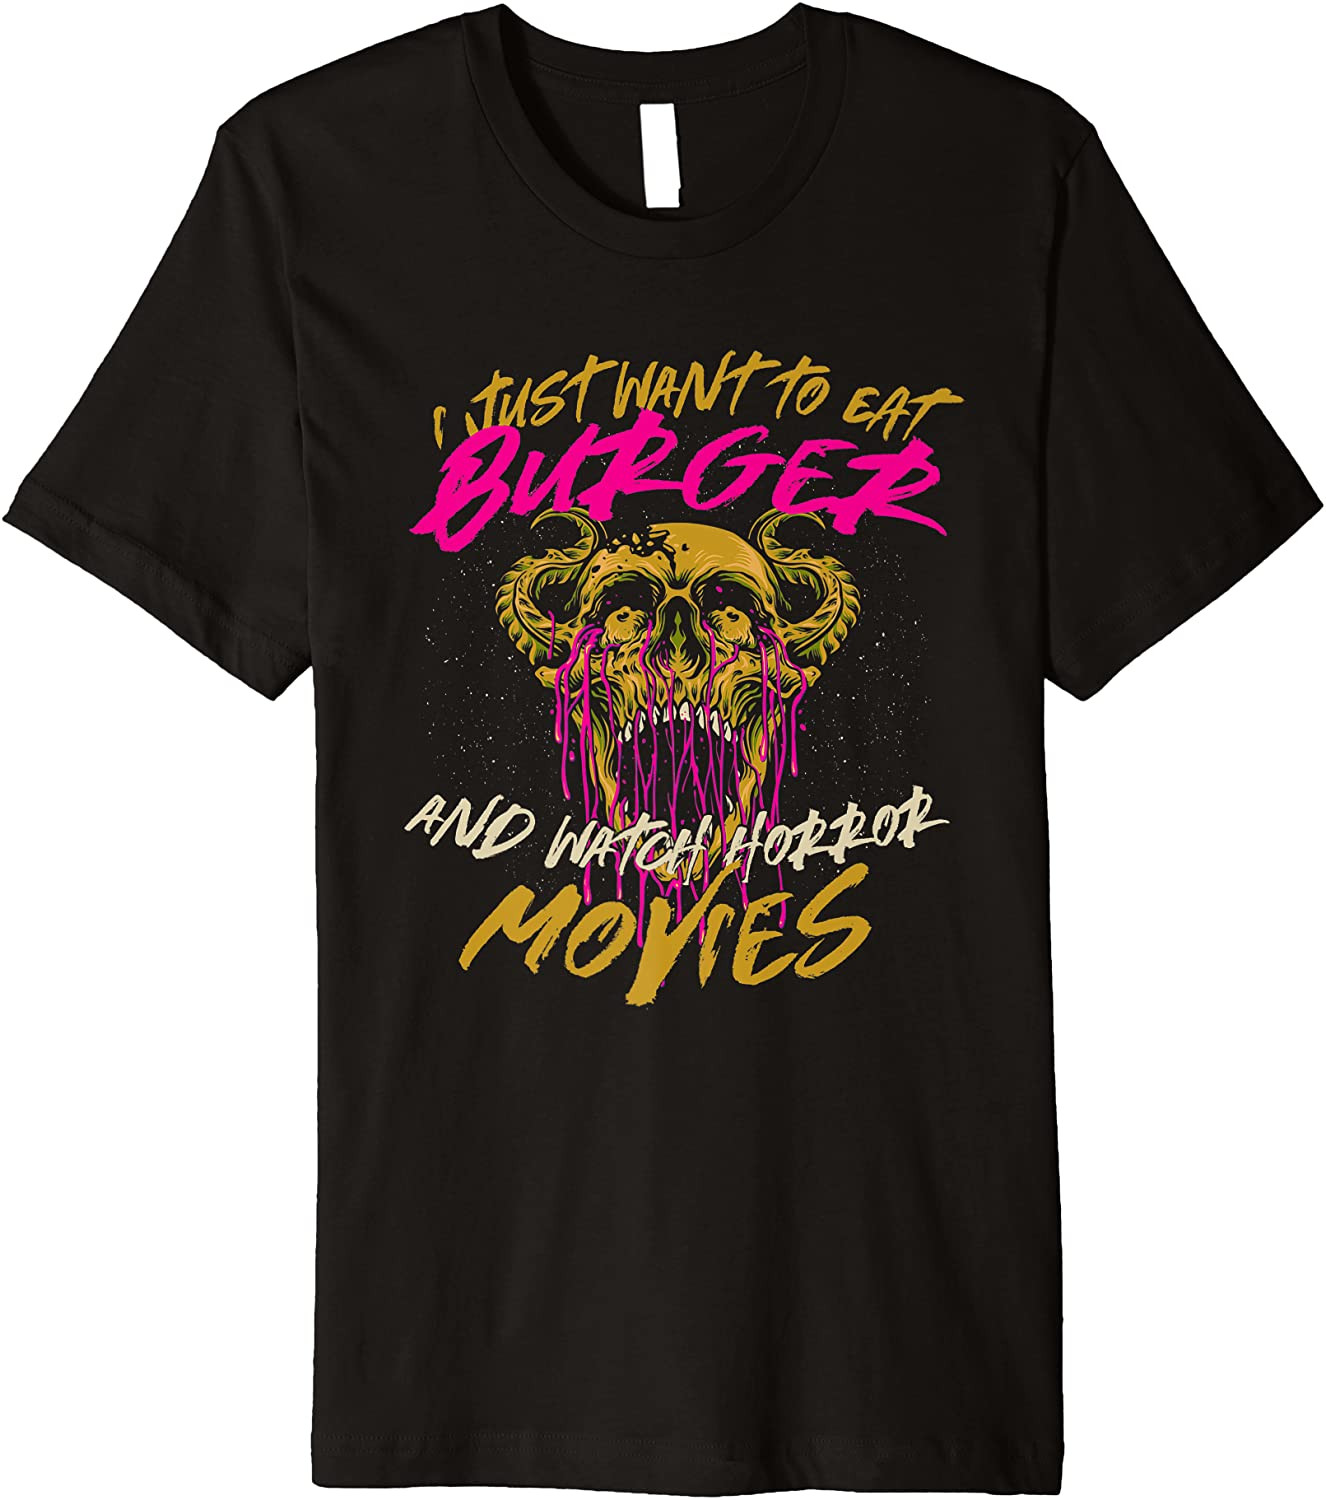 Eat Burger And Watch Horror Movies Comfort Food Hamburger T-Shirt